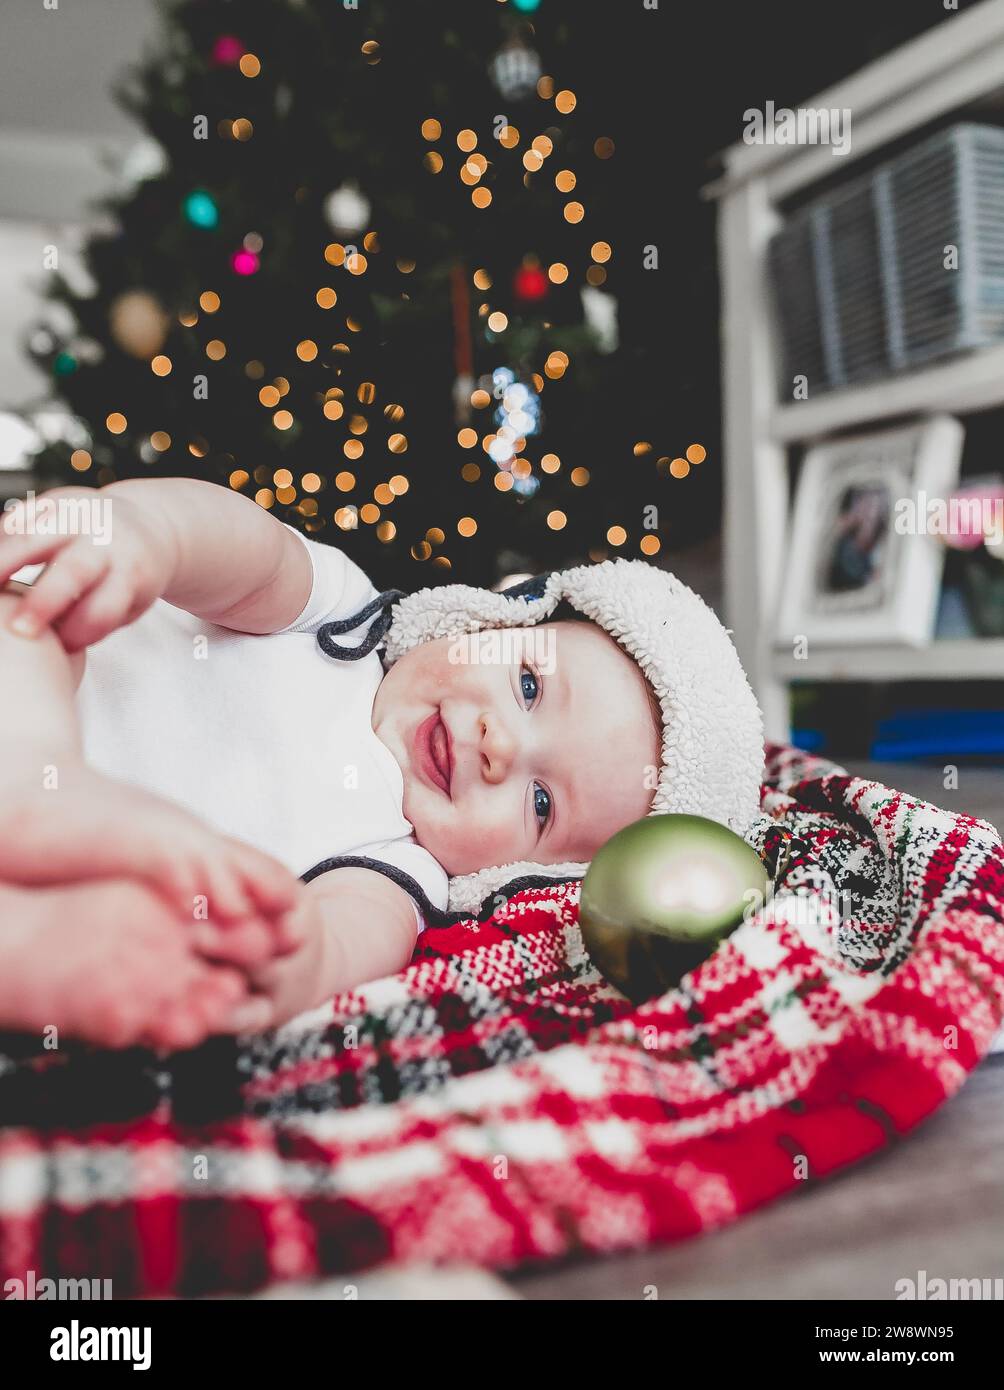 Lächelndes Baby auf Decke mit weihnachtsbaum im Hintergrund Stockfoto